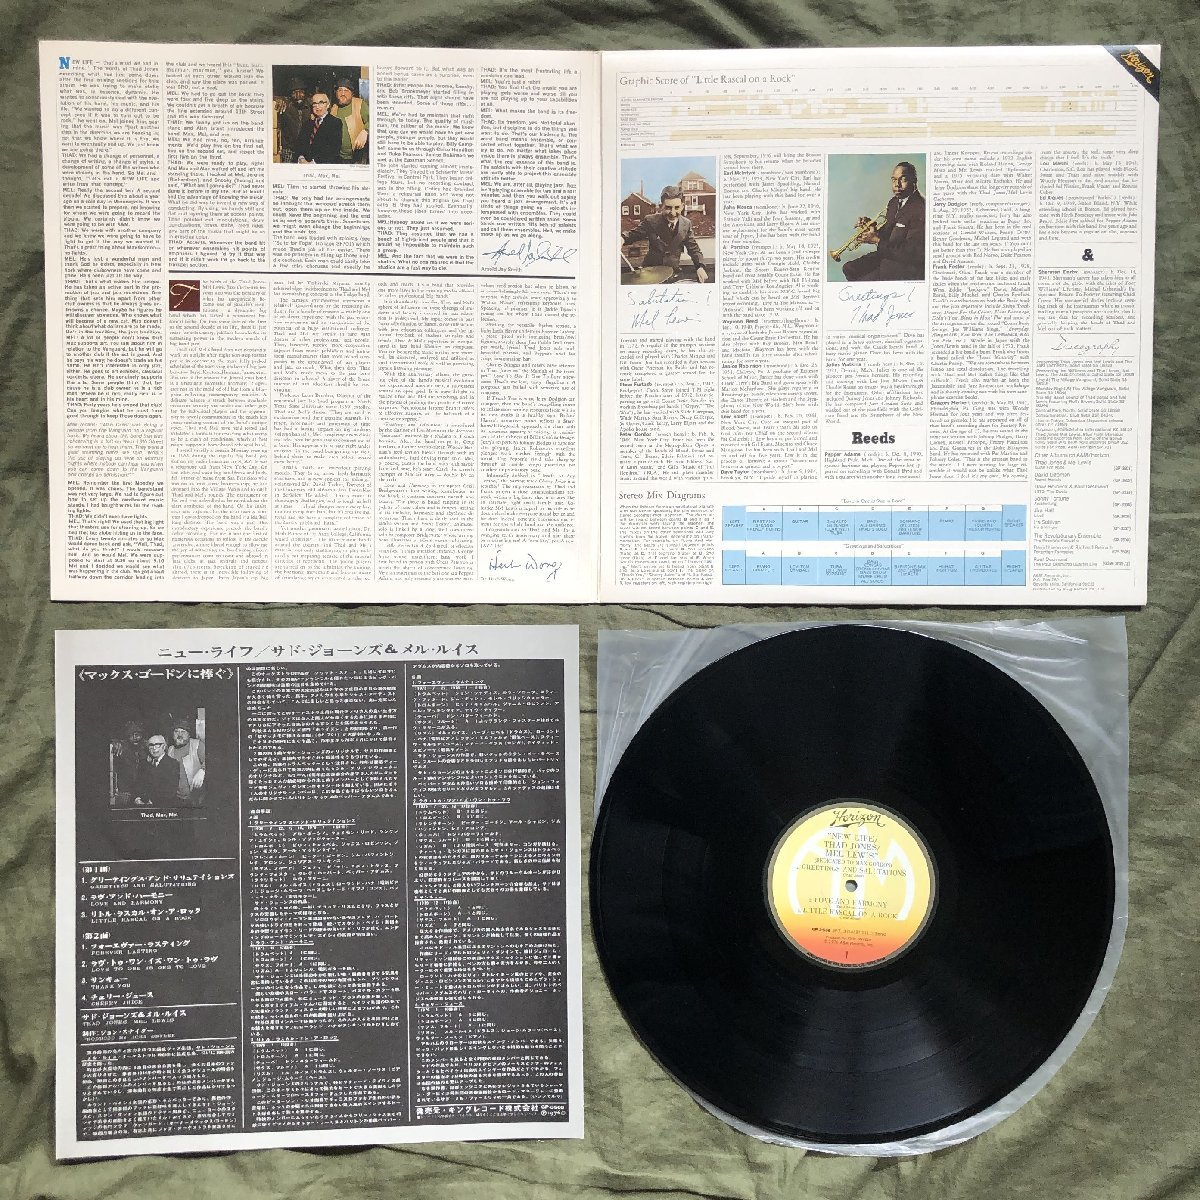 原信夫Collection 傷なし美盤 美ジャケ 1976年 国内盤 Thad Jones / Mel Lewis LPレコード New Life (Dedicated To Max Gordon)_画像5